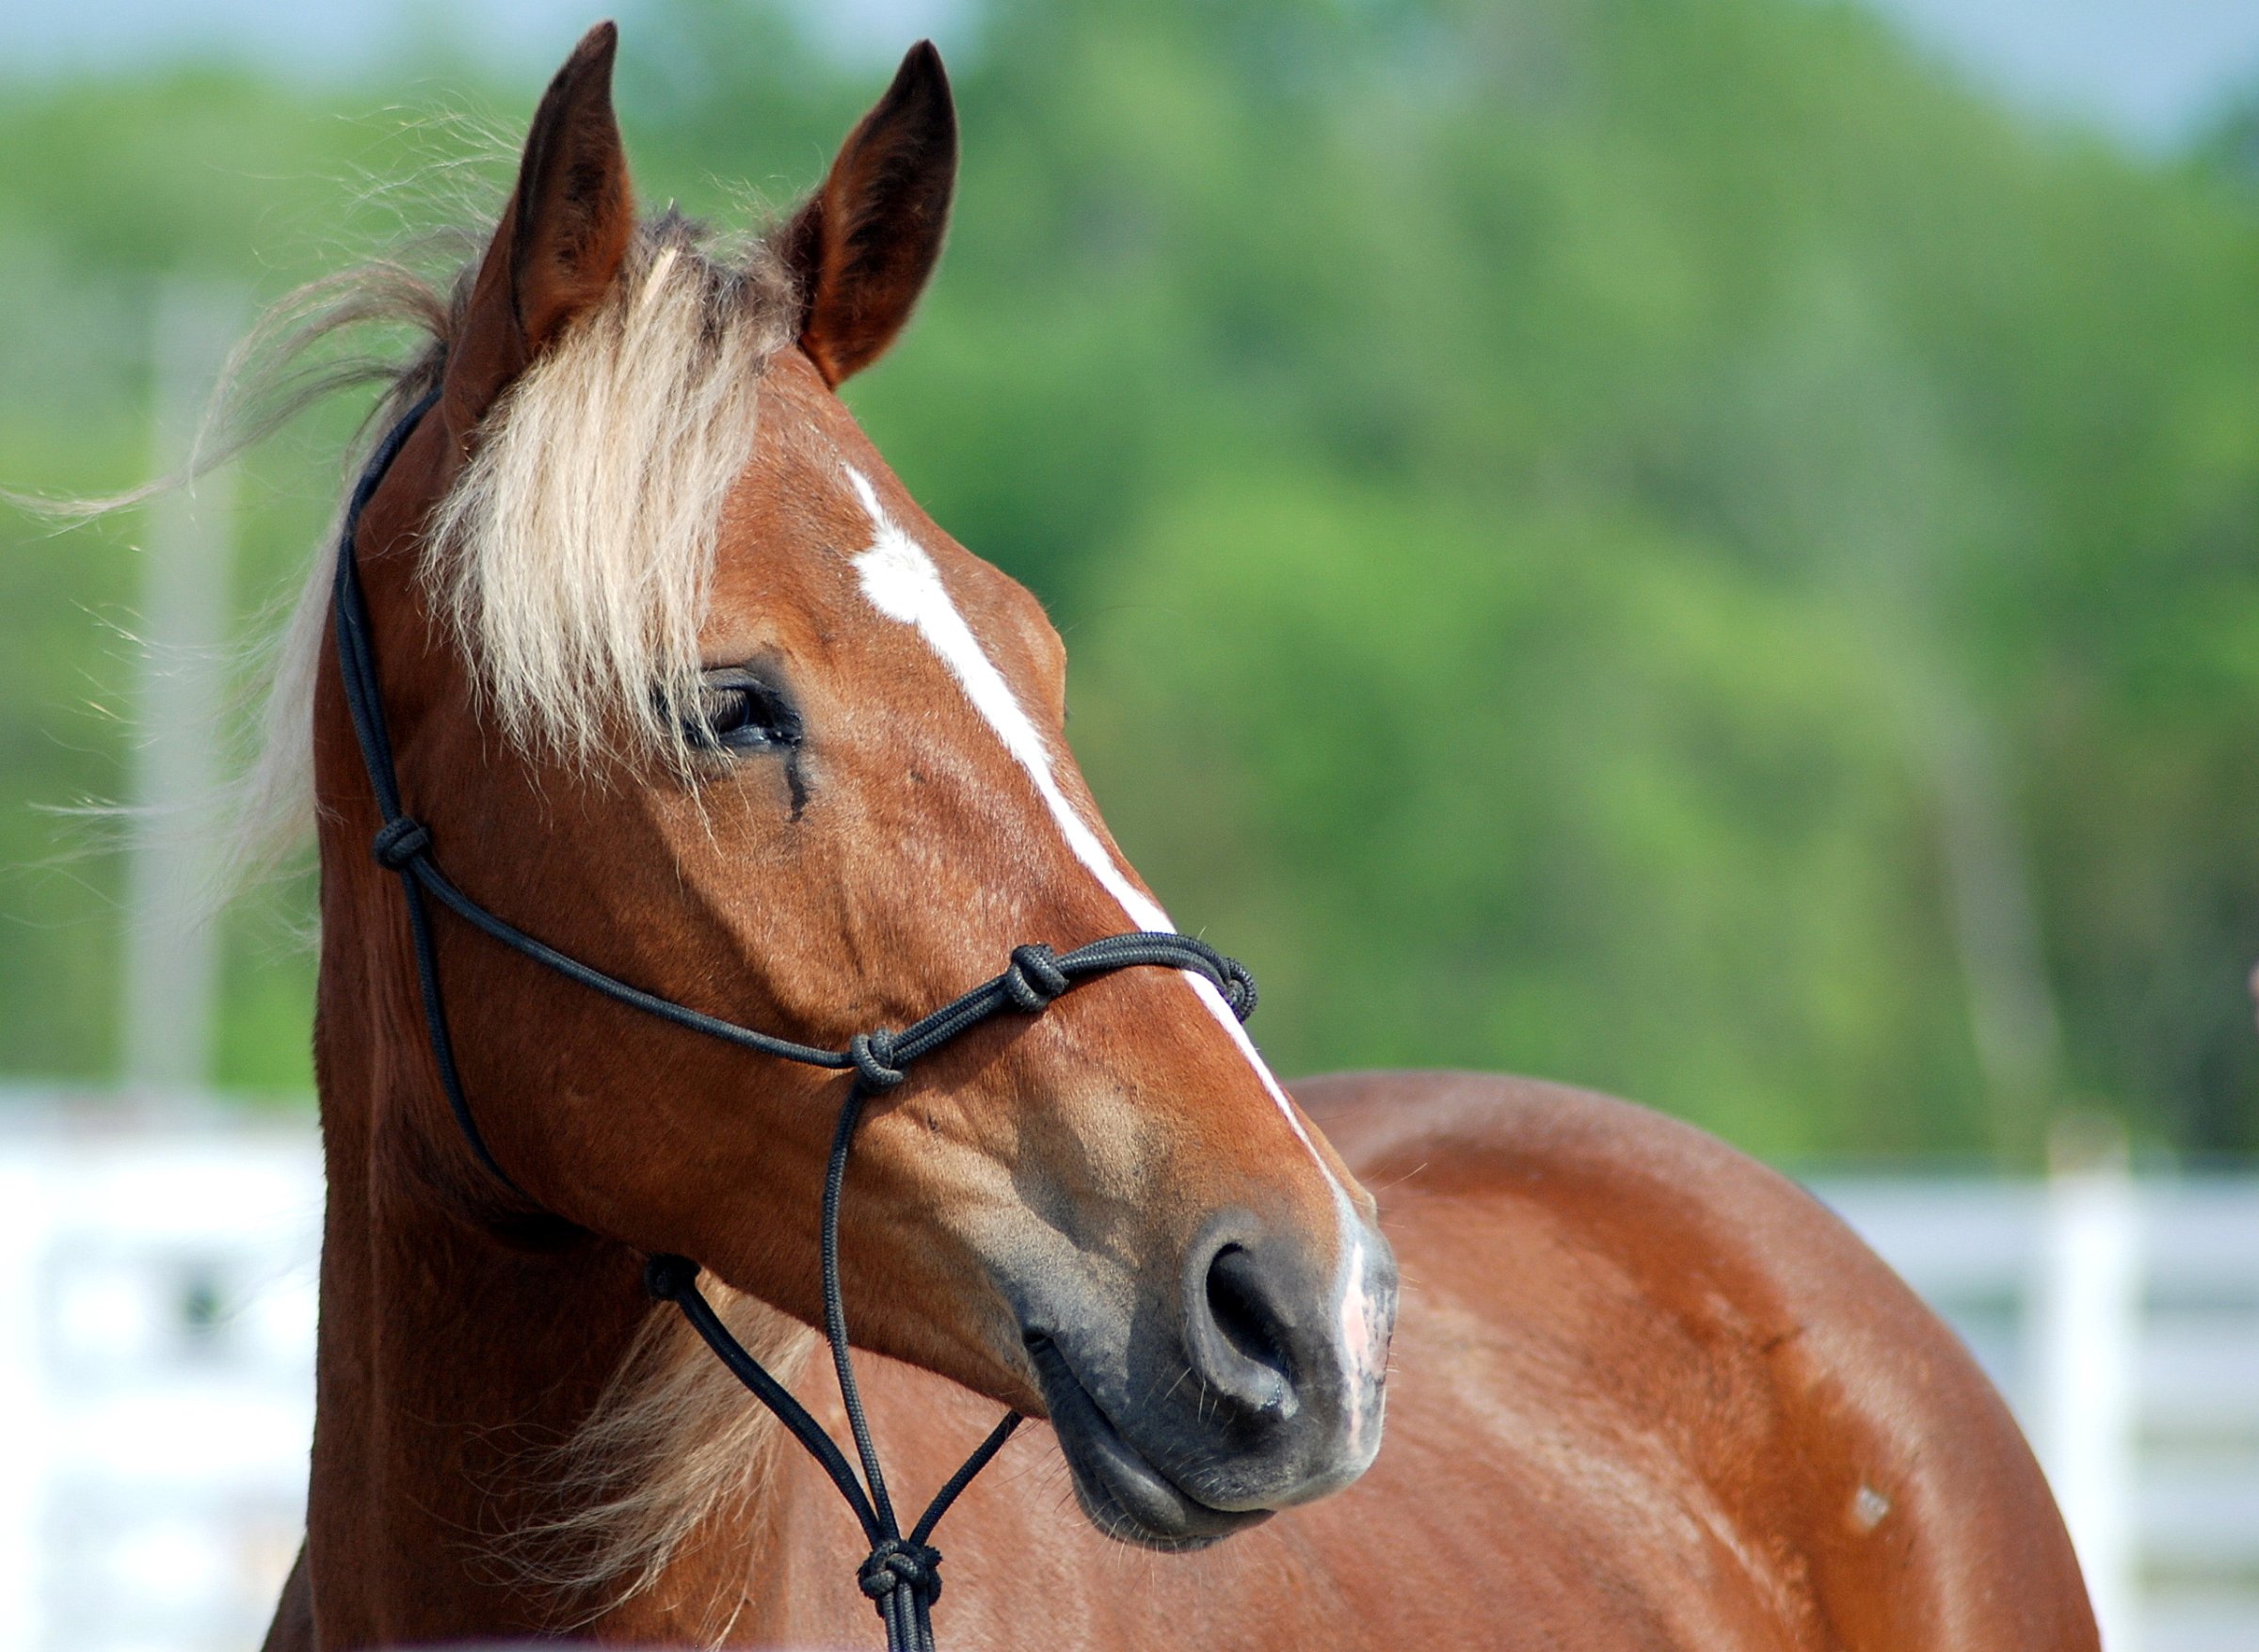 Det er mistanke om at en hest er smittet av en sjelden form for herpesvirus, som kan gi ustøhet og lammelser. Illustrasjonsbilde fra Colourbox